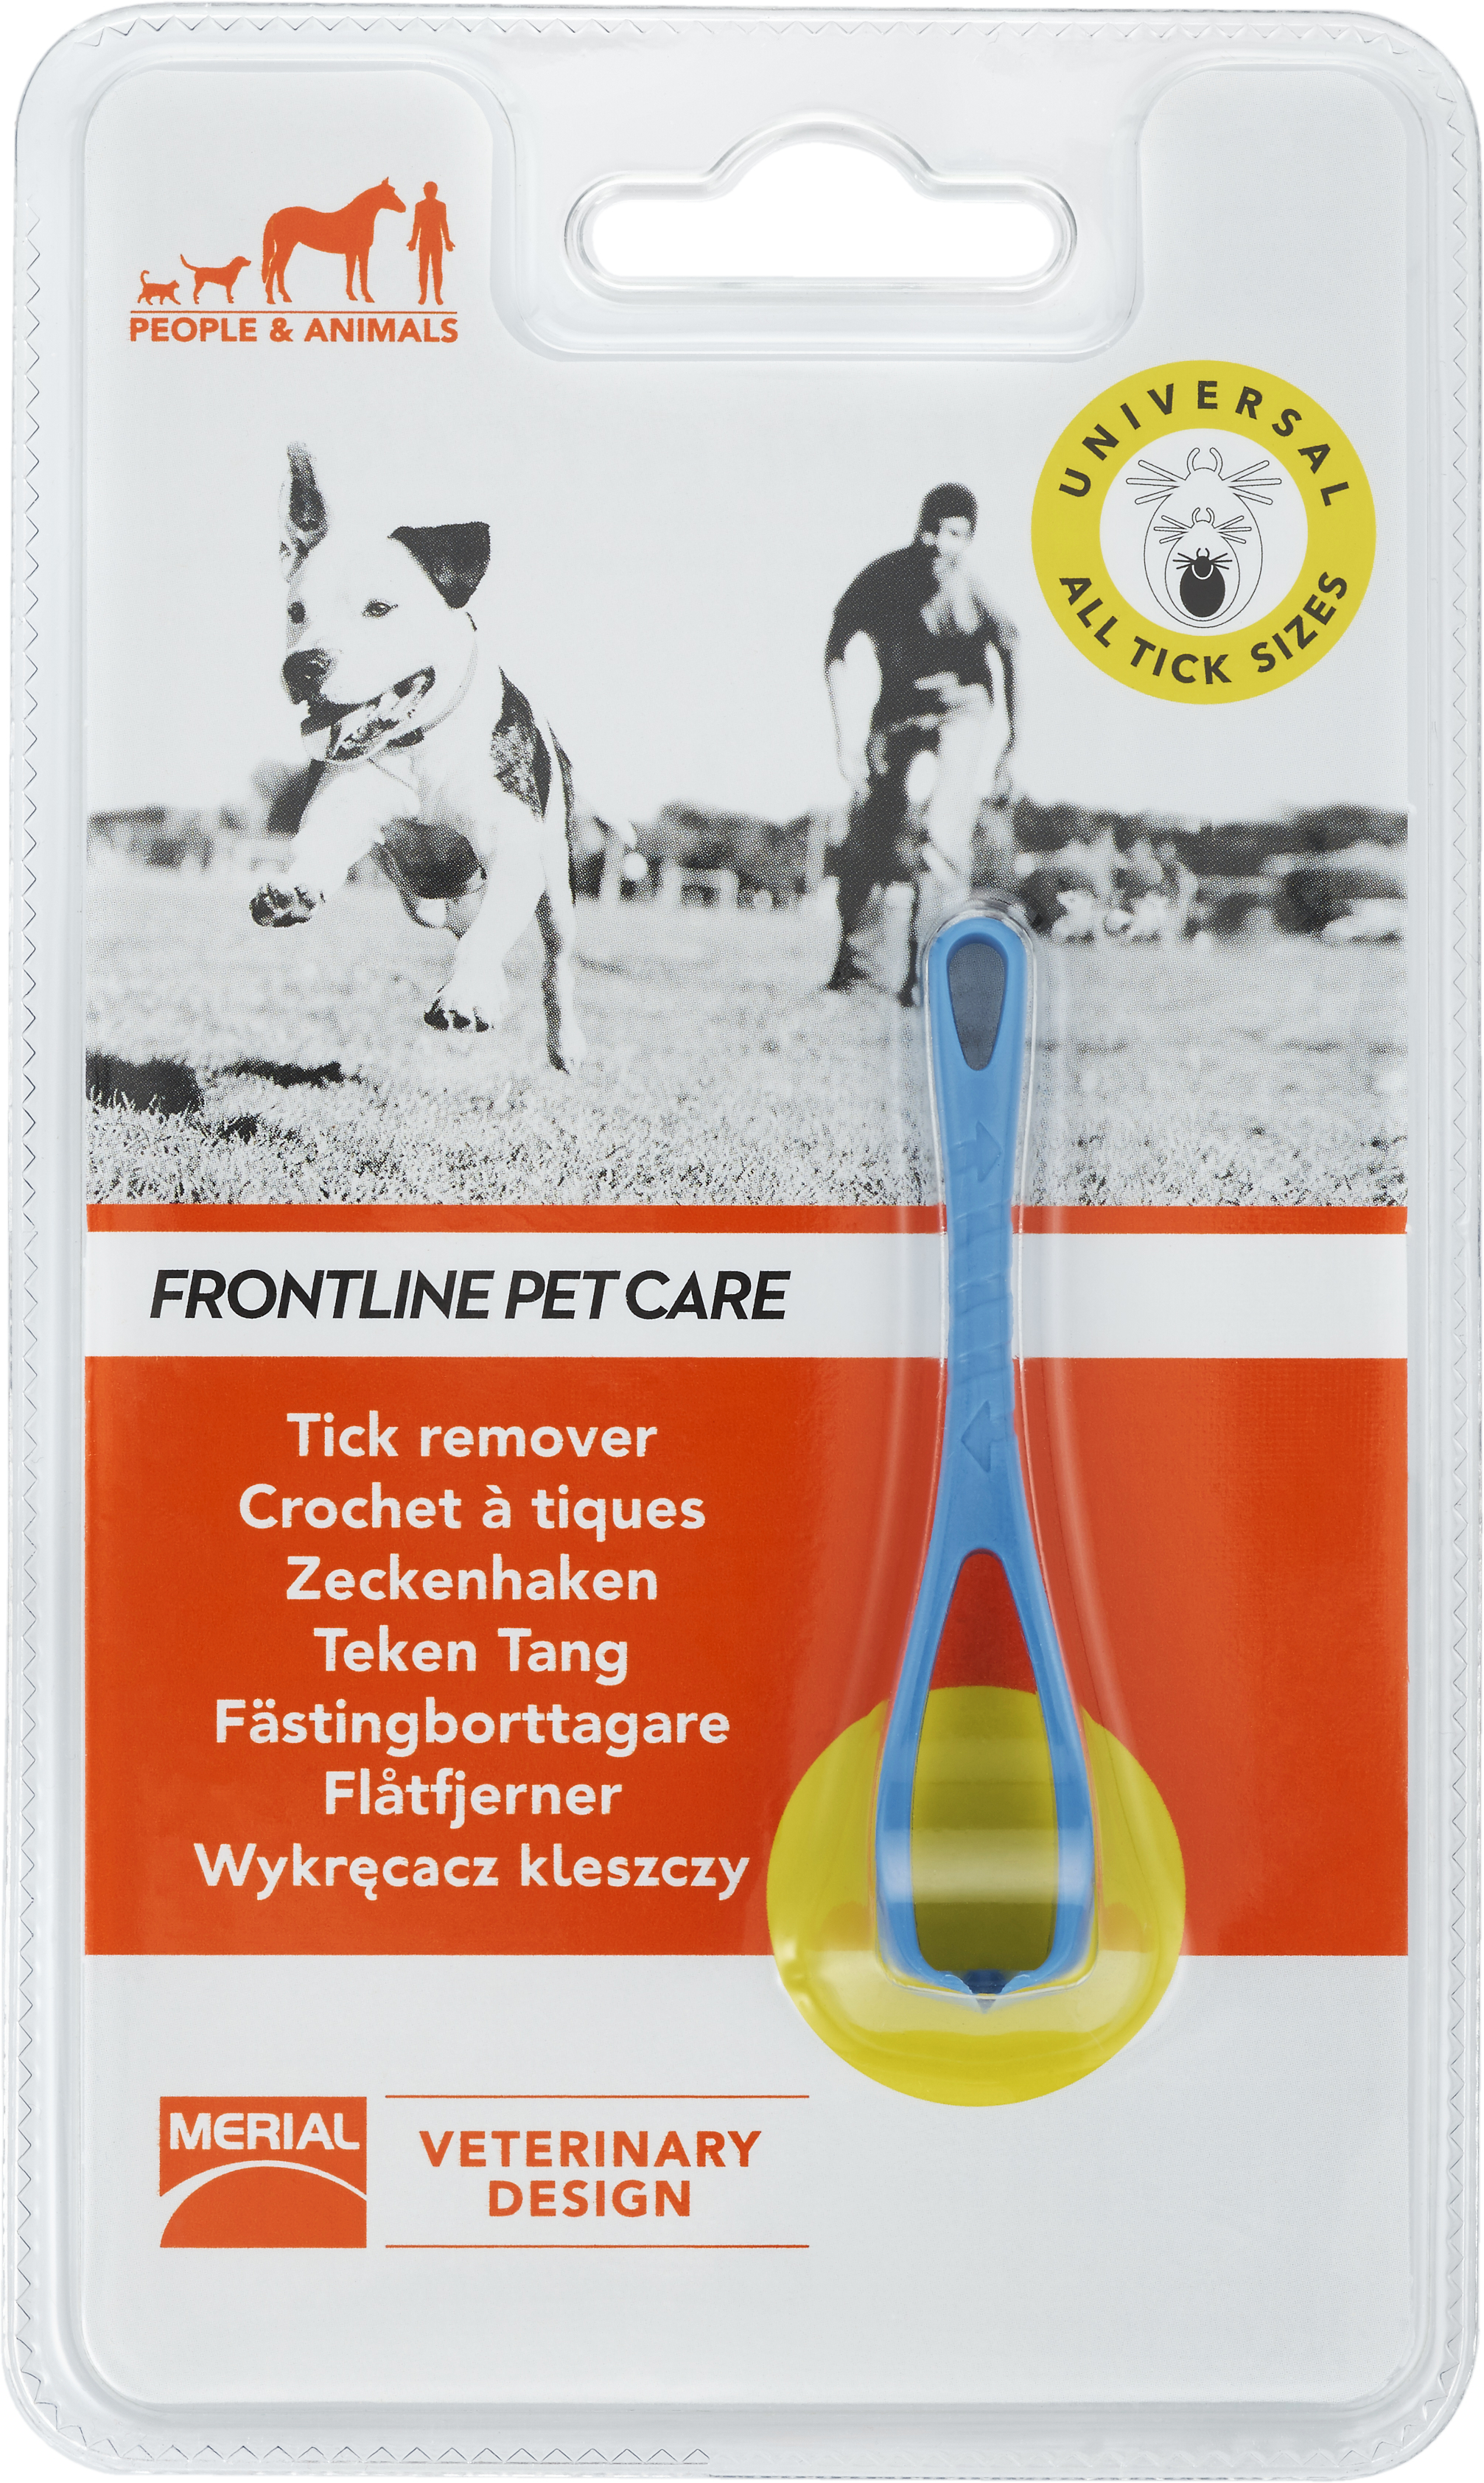 Frontline Pet Care Fästingborttagare